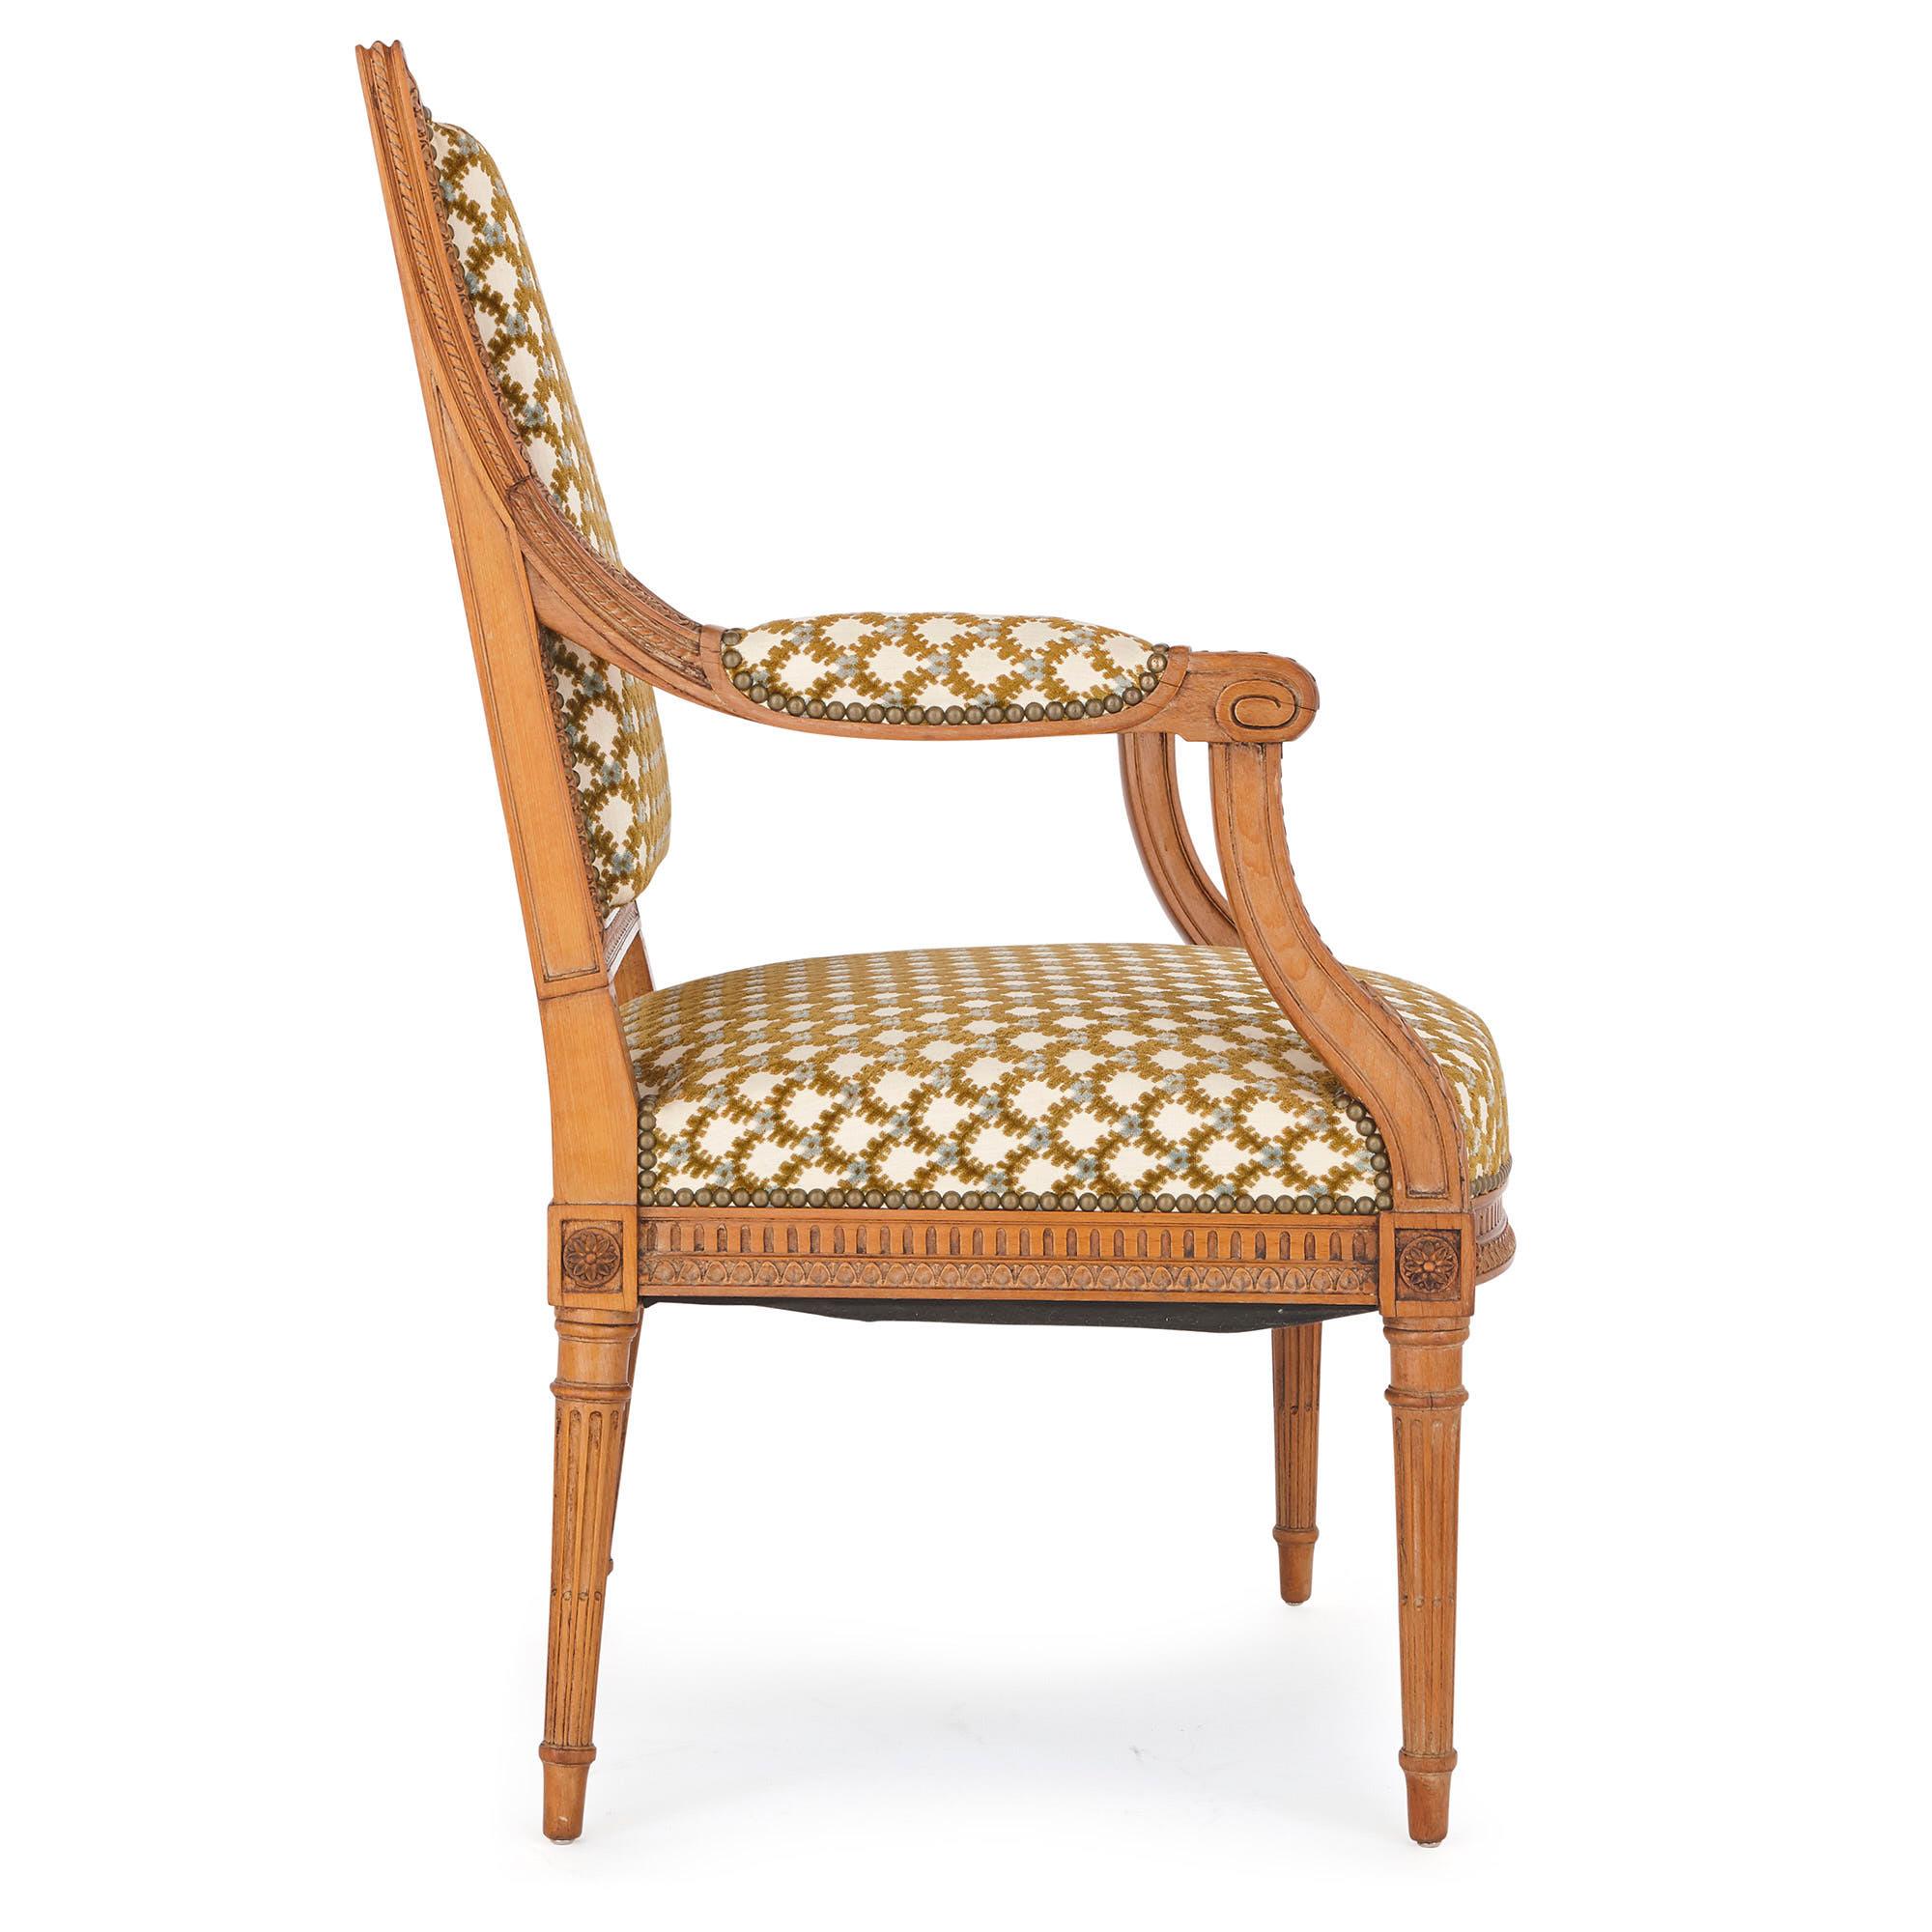 Ce fauteuil est une belle pièce d'artisanat, réalisée par l'un des plus importants artisans de la fin du XIXe siècle et du début du XXe siècle, François Linke. Le dossier de la chaise est signé 